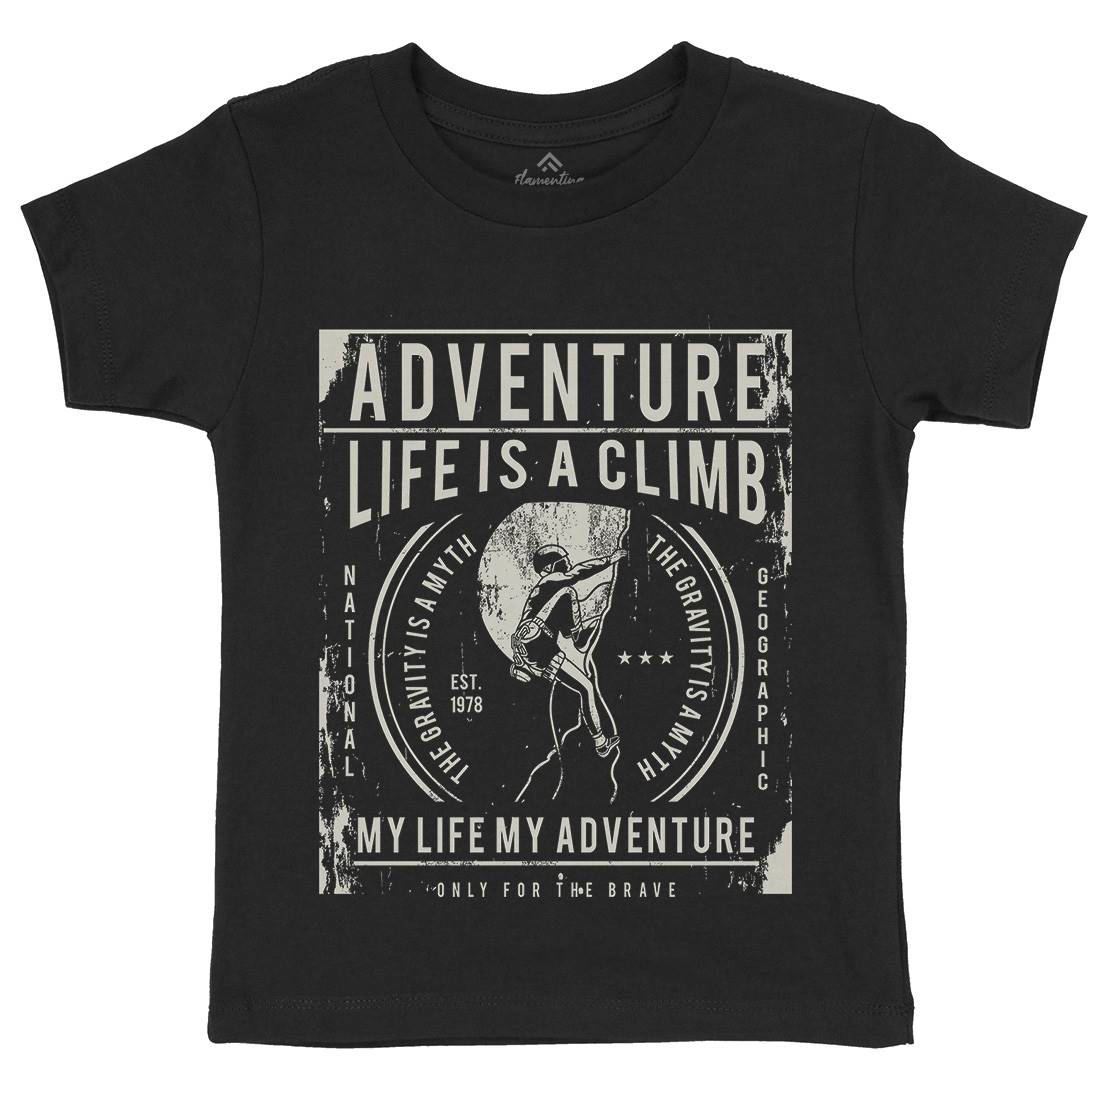 Life Is A Climb Kids Crew Neck T-Shirt Sport A085